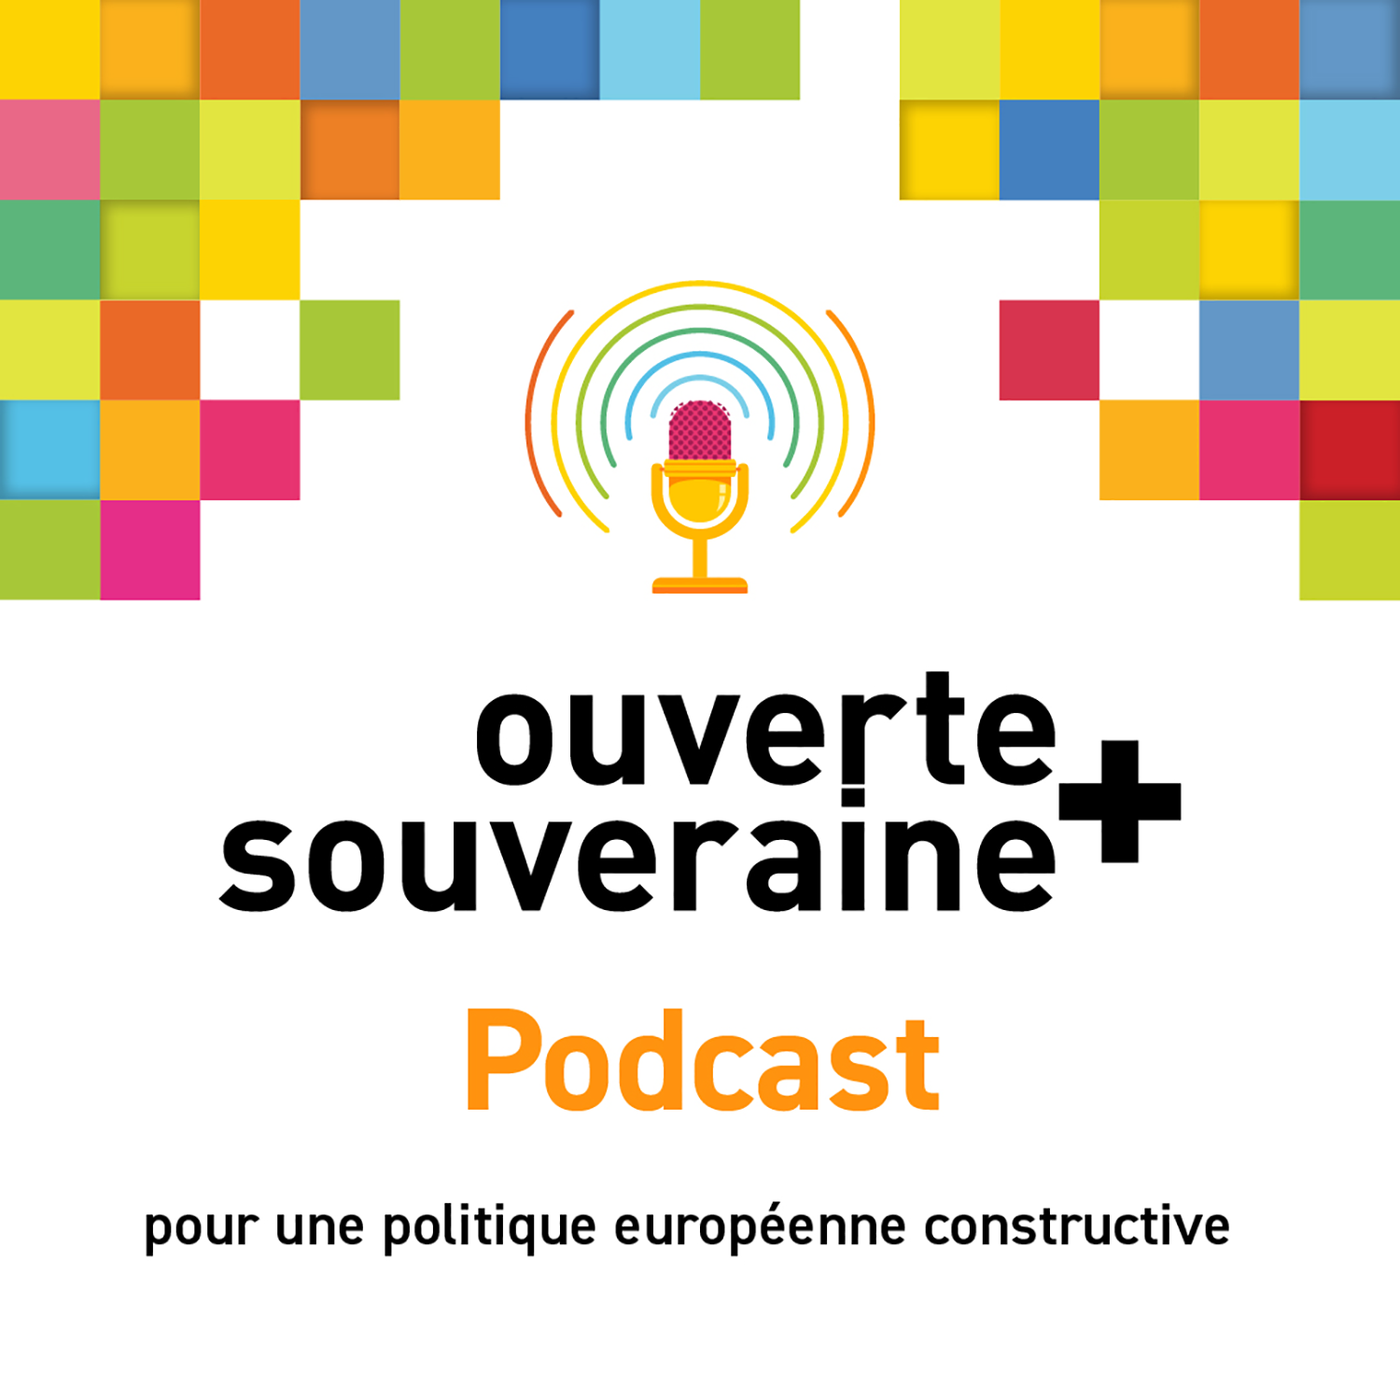 Podcast ouverte+souveraine - pour une politique européenne constructive